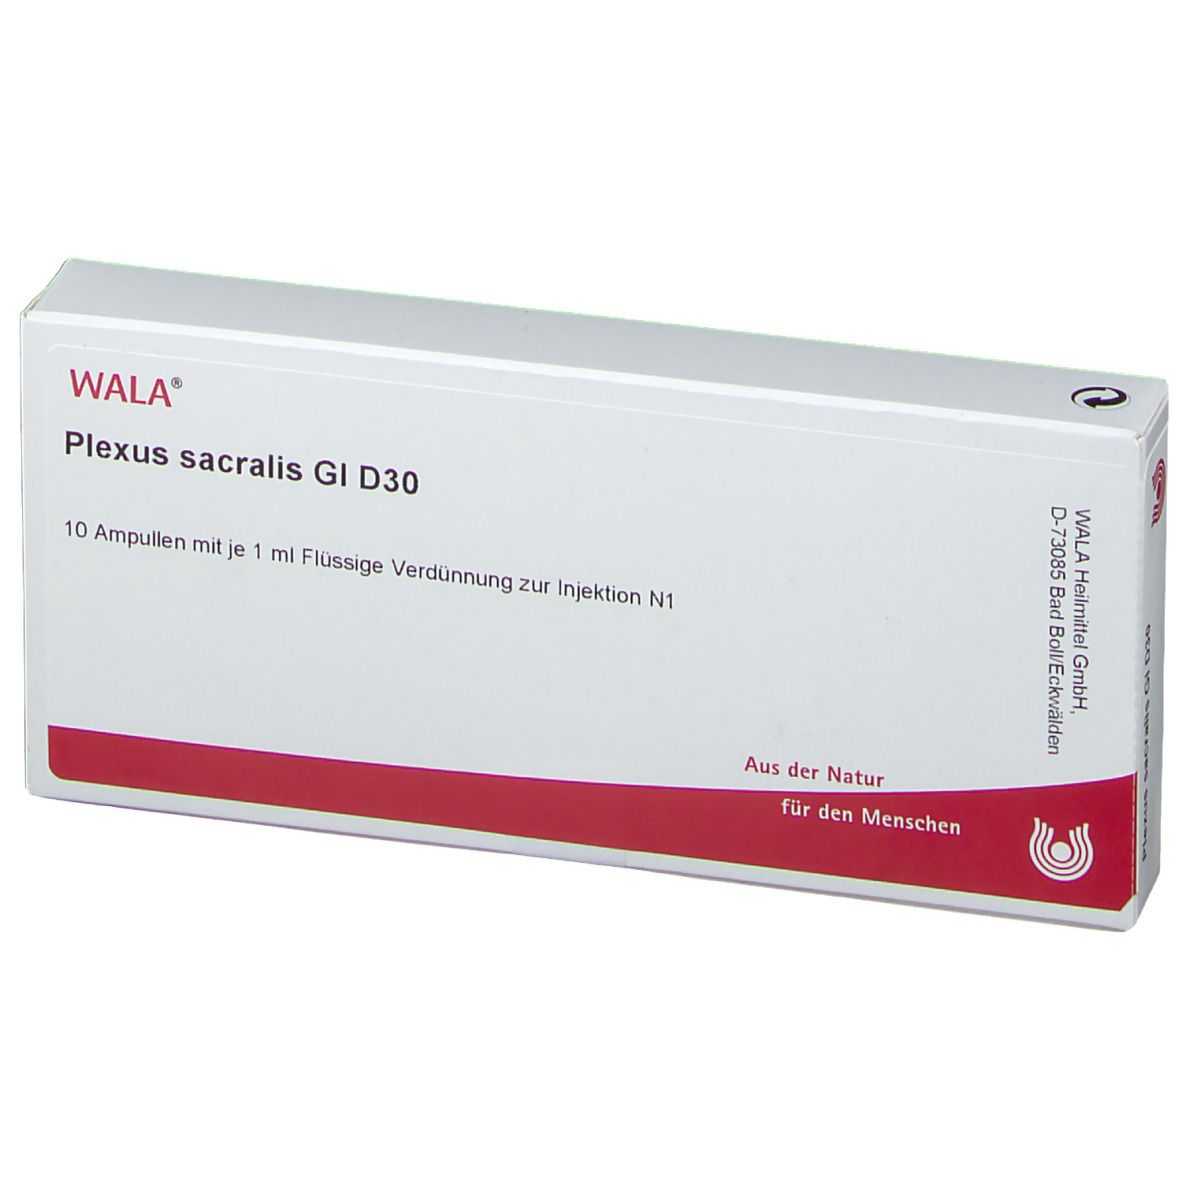 WALA® Plexus sacralis Gl D 30